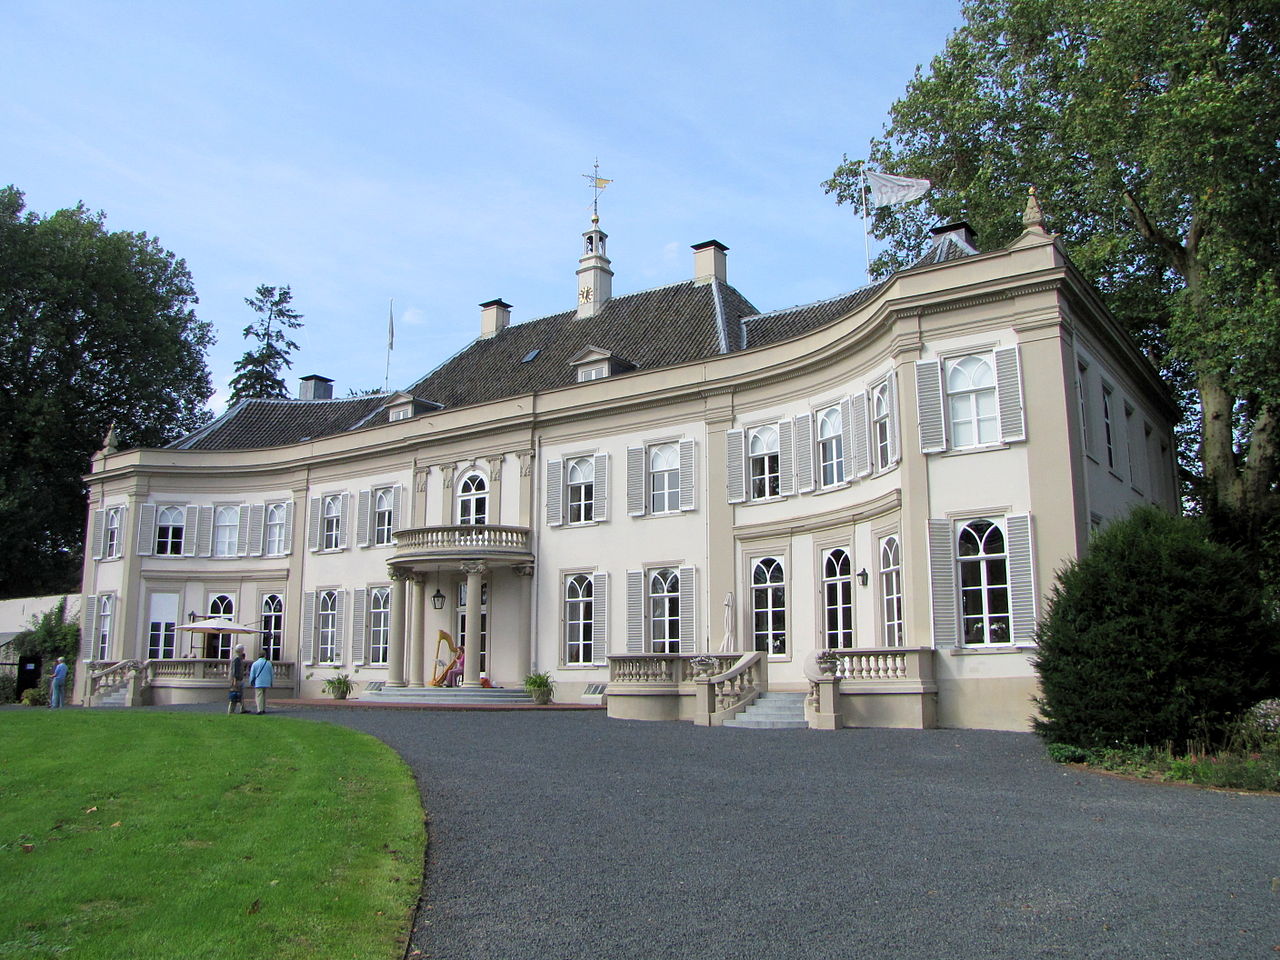 Huis Landfort in Megchelen